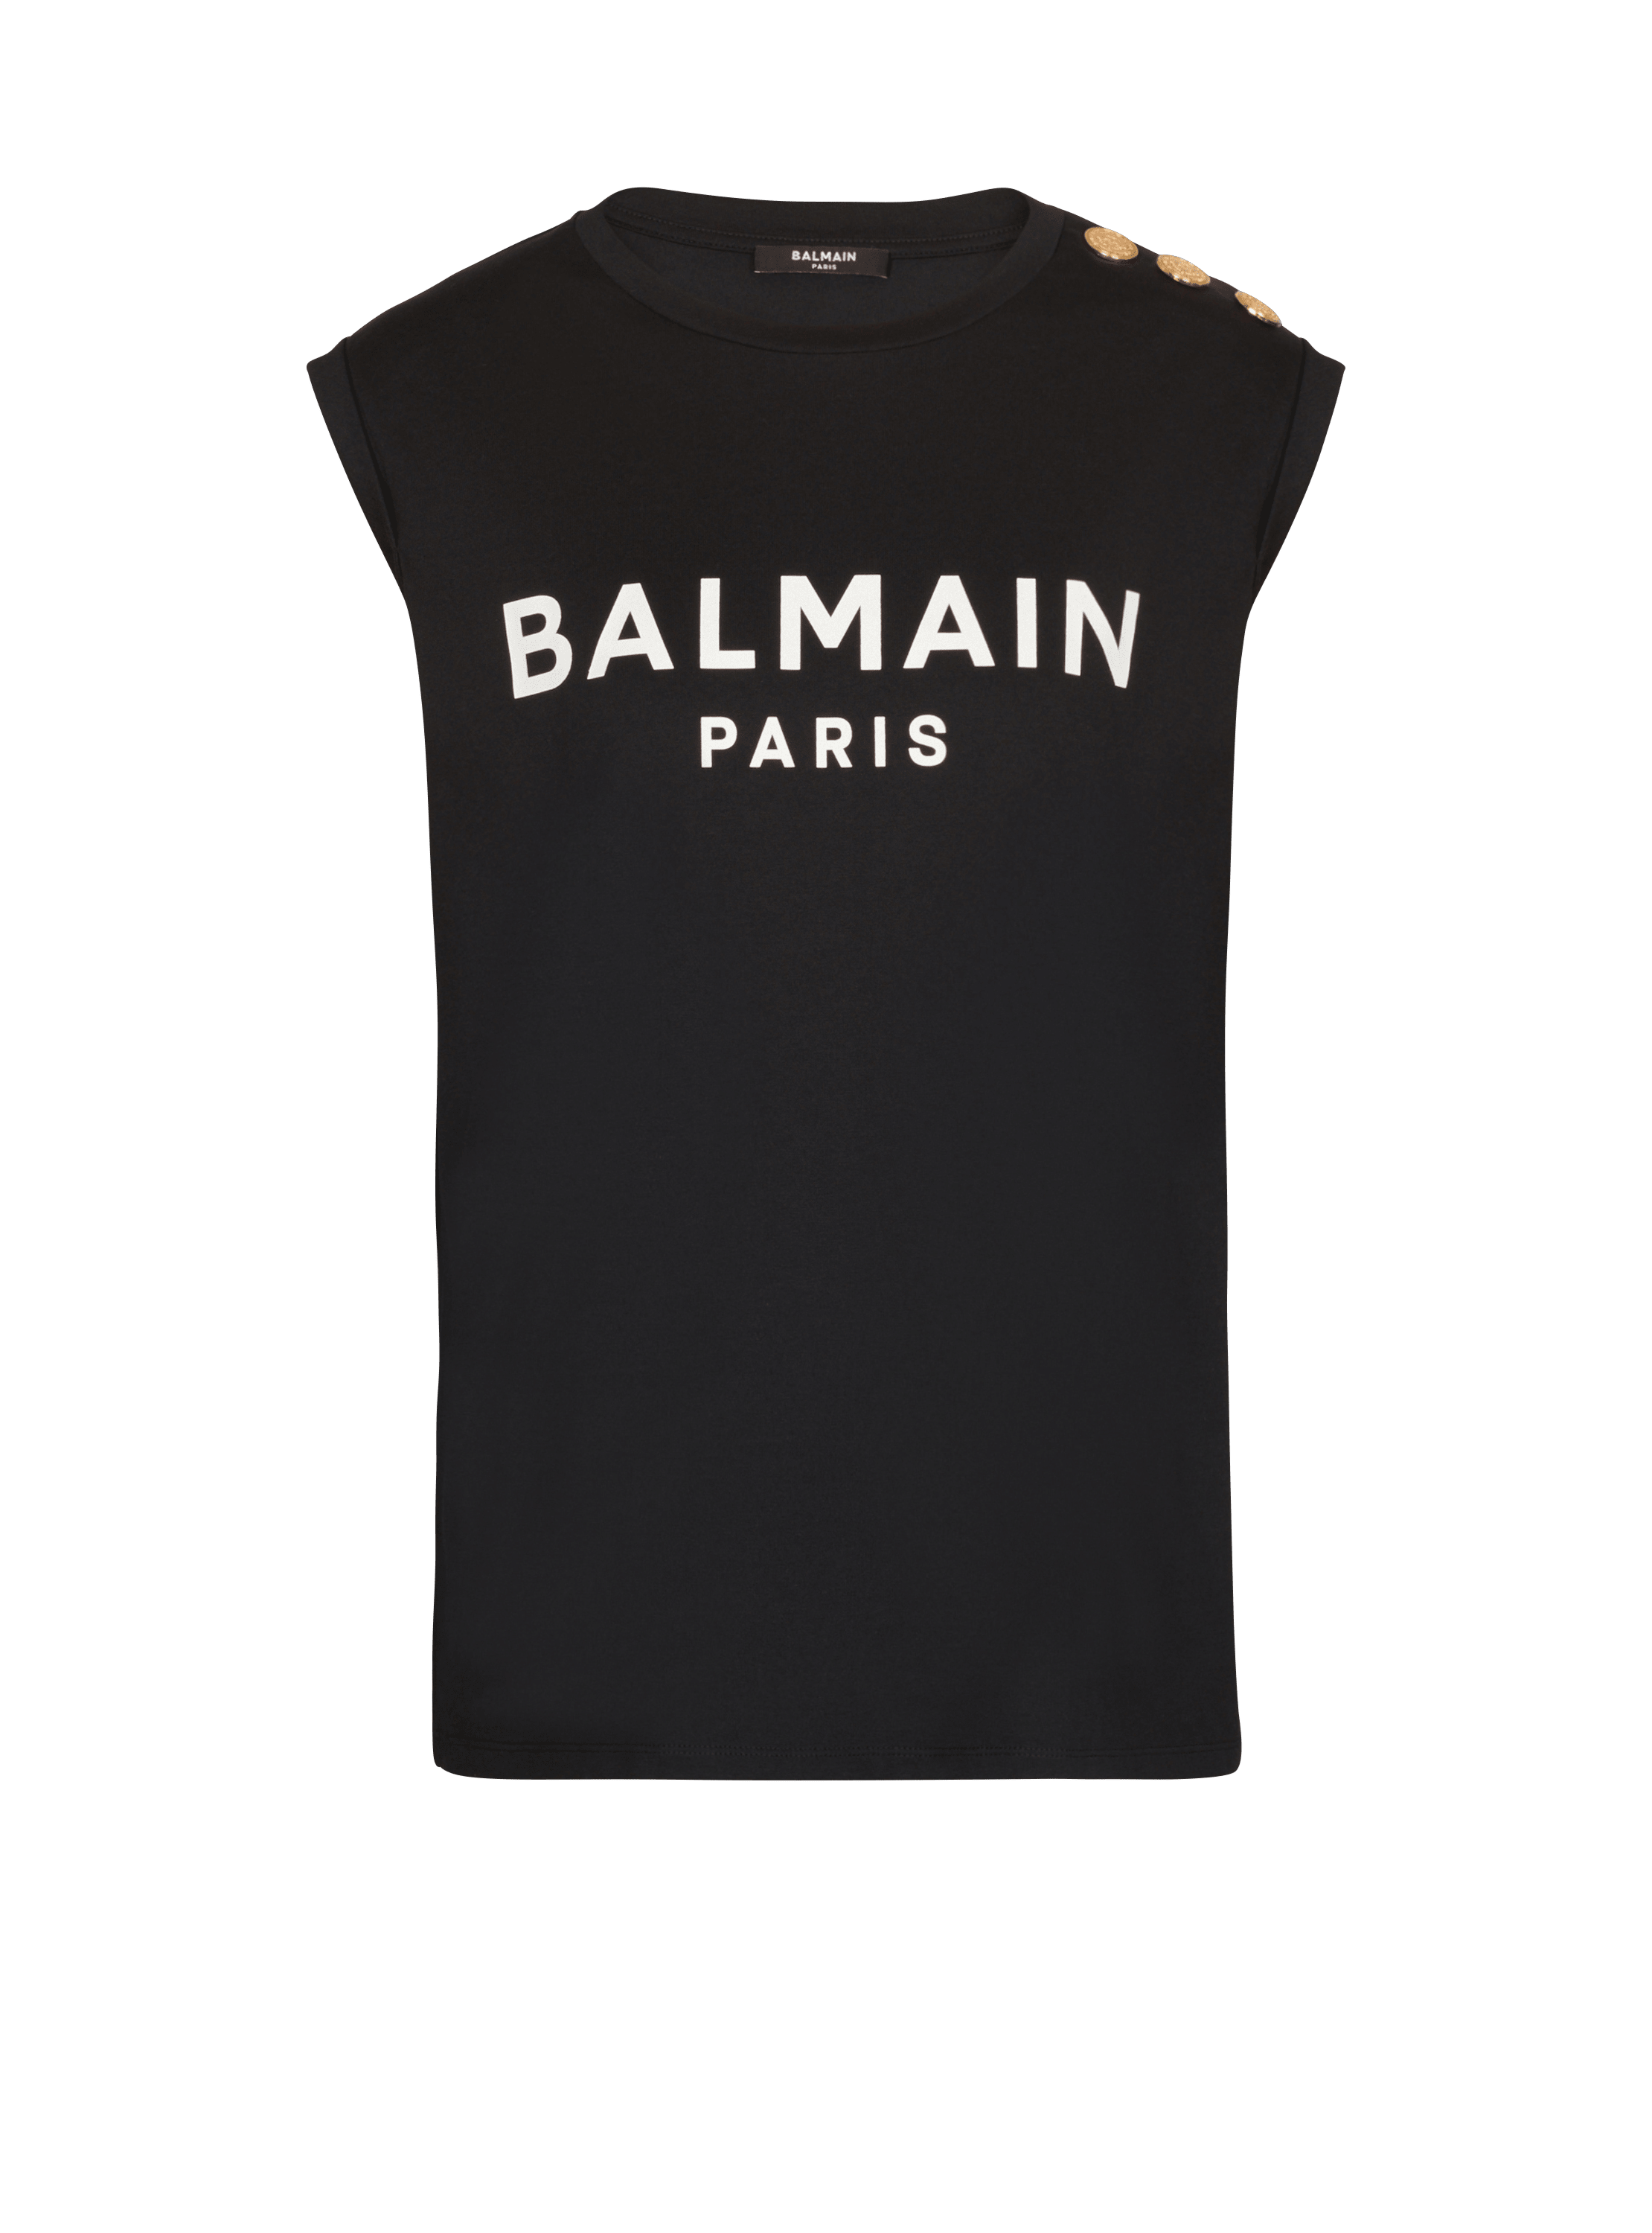 『BALMAIN』バルマン (L) ロゴプリントTシャツ確認は人間がおこなってる為